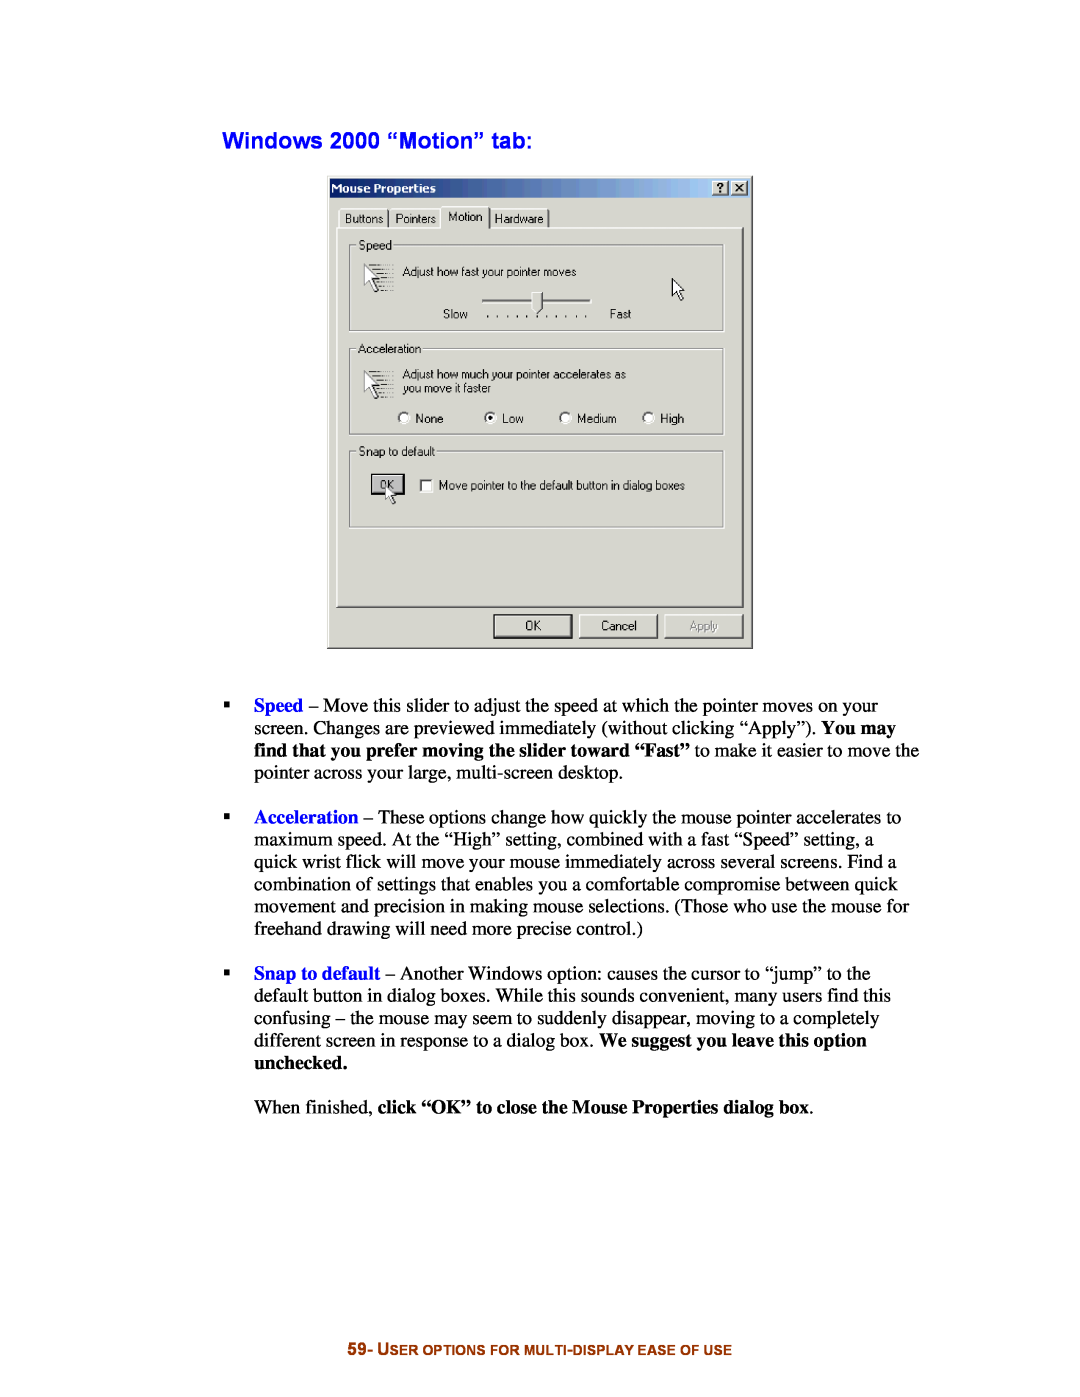 Digital Tigers SideCar MMS Series manual Windows 2000 “Motion” tab 